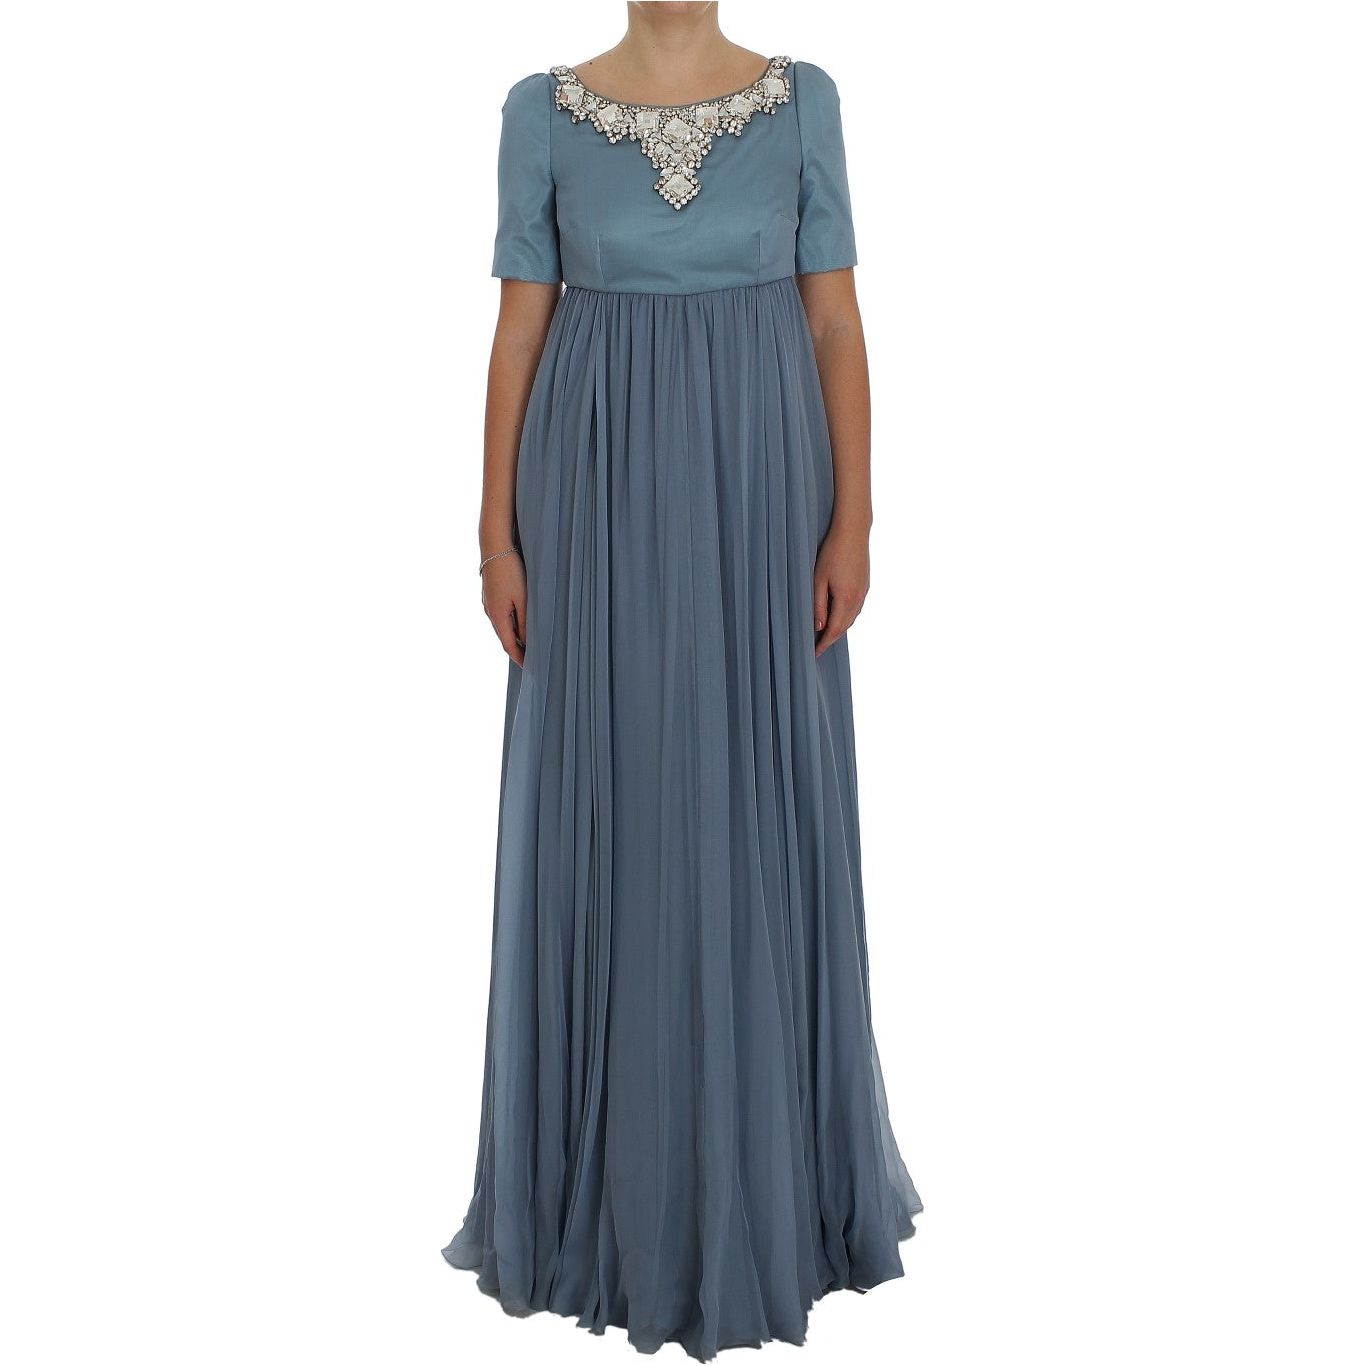 Dolce & Gabbana Elegant Crystal-Embellished Silk Gown blue-silk-crystal-sheath-gown-ball-dress 72691-blue-silk-crystal-sheath-gown-ball-dress.jpg